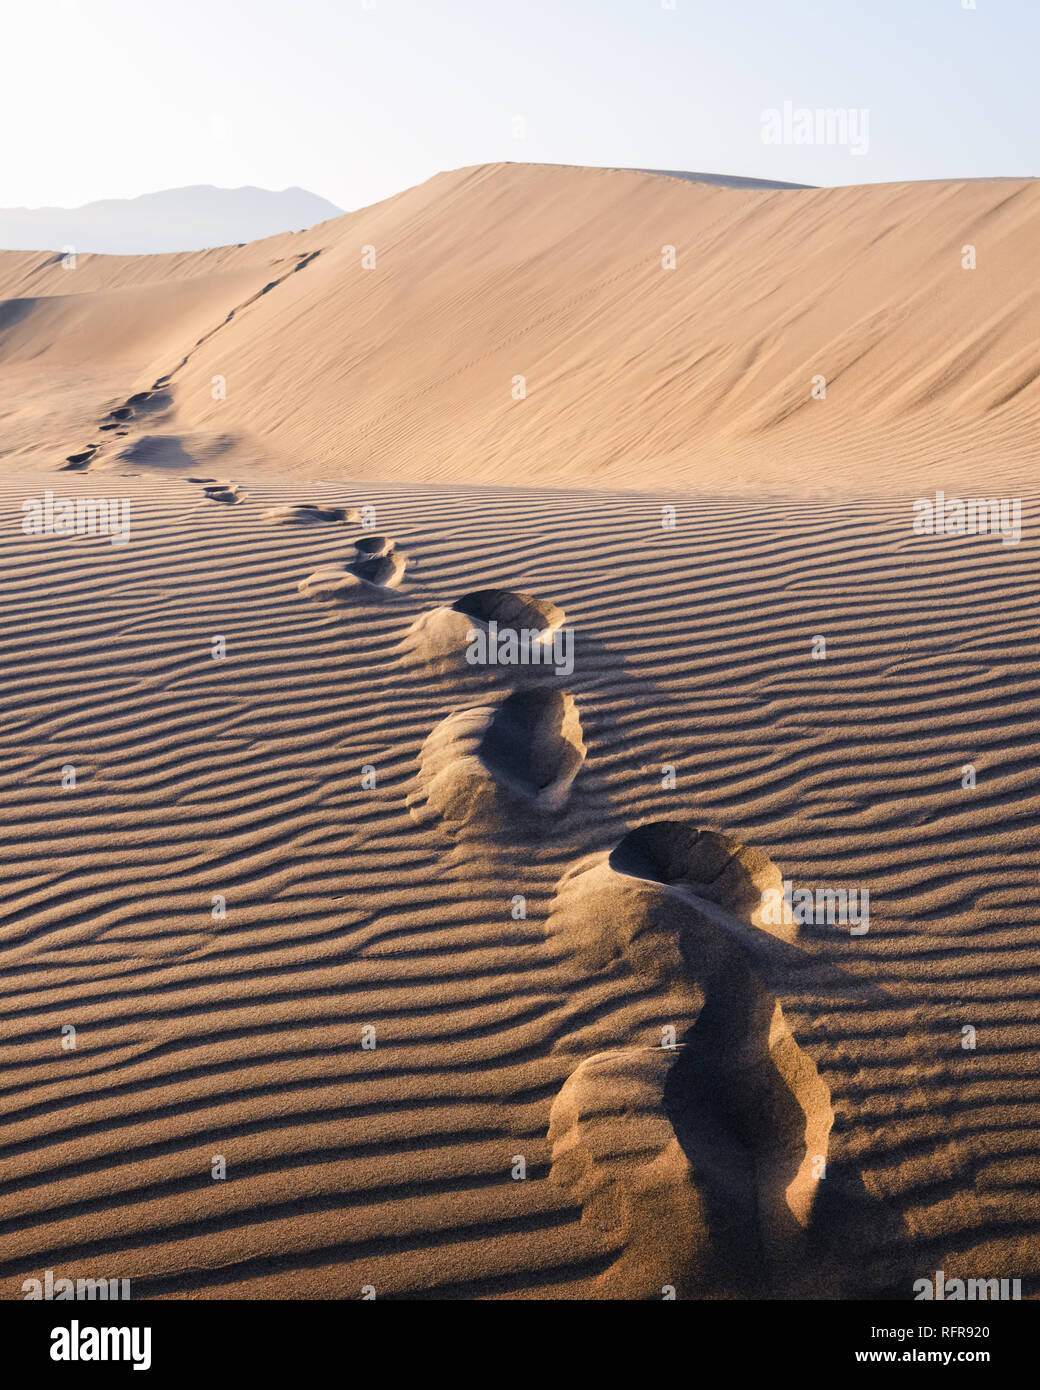 Impronte sulla sabbia nel deserto che si protende nella distanza. Hot paesaggio con dune di sabbia contro il cielo chiaro Foto Stock